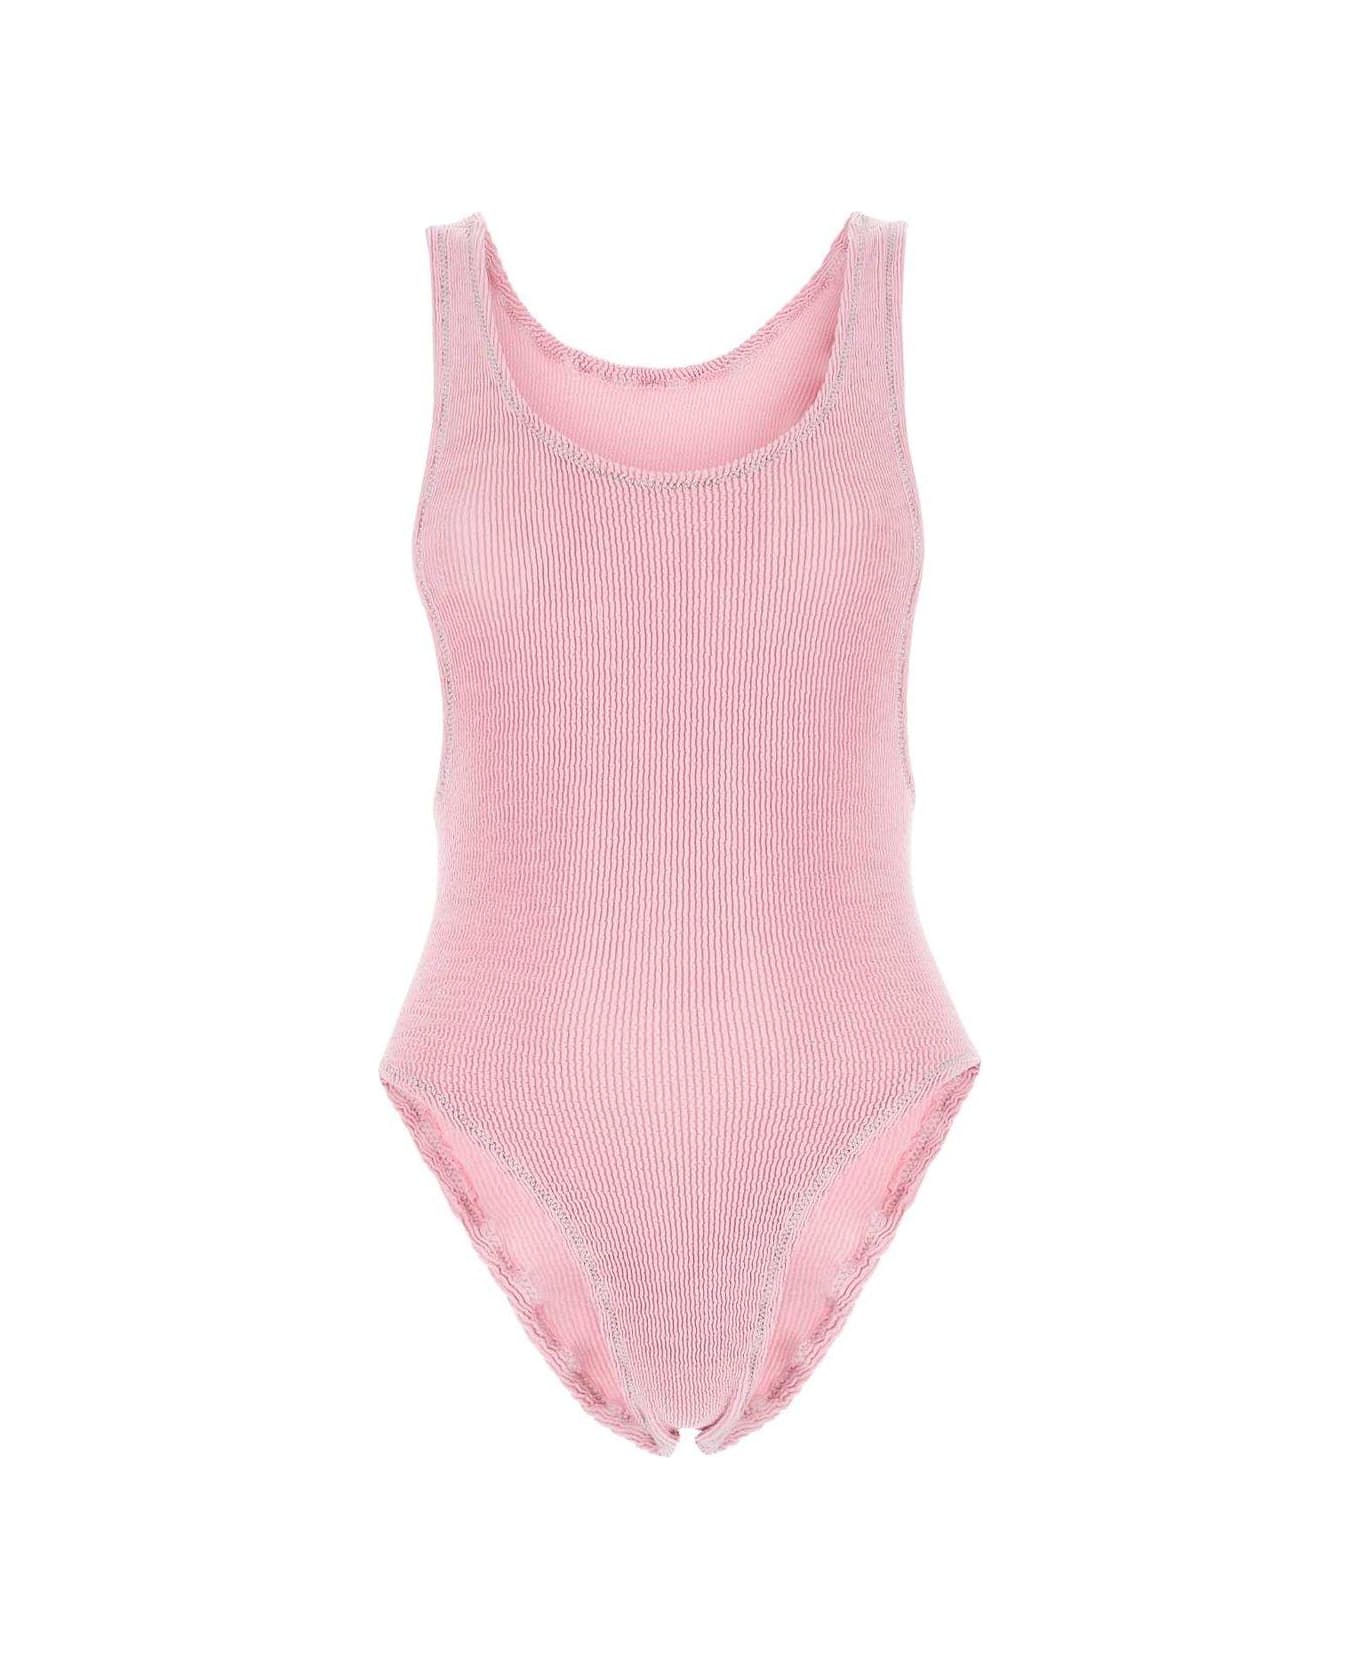 Reina Olga Ruby Stretch Design Sleeveless Swimsuit - Non definito